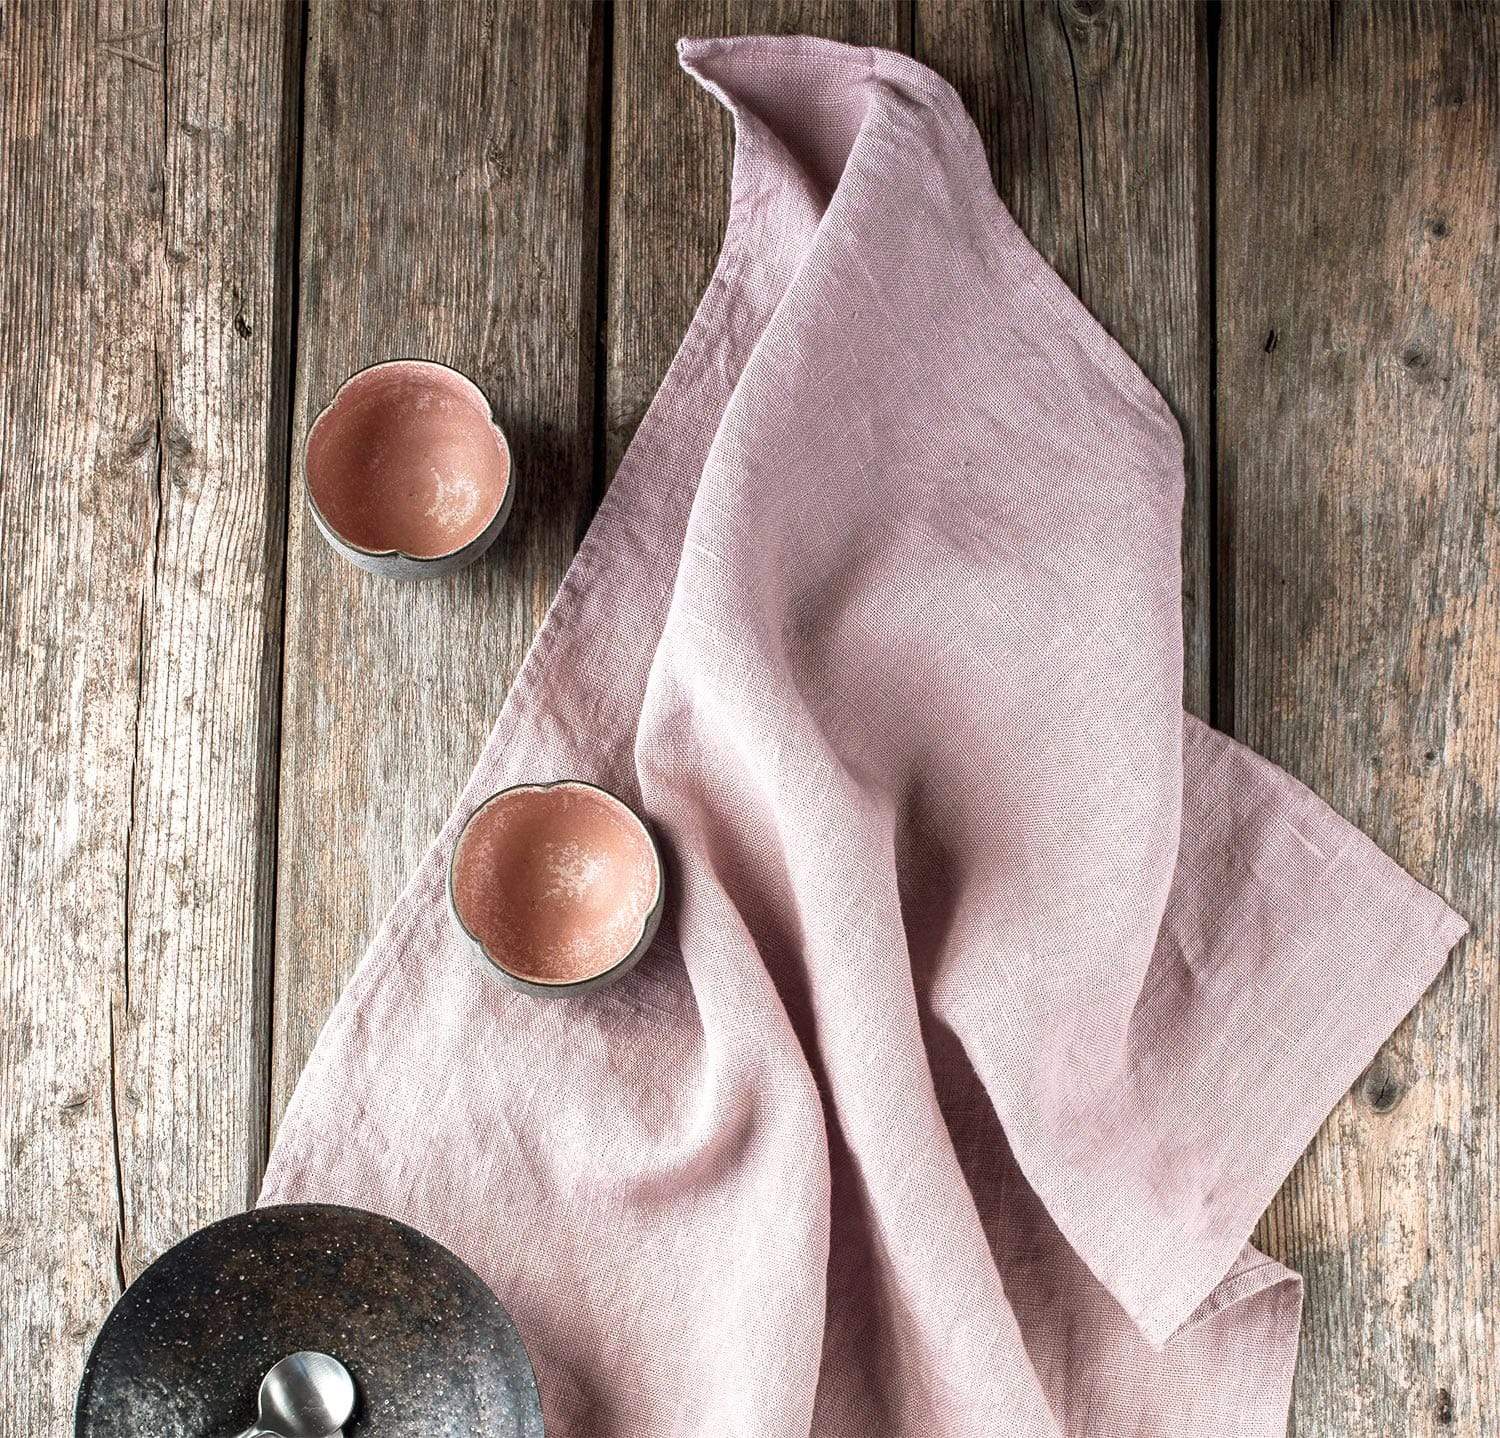 100% Pure Linen Kitchen Towels